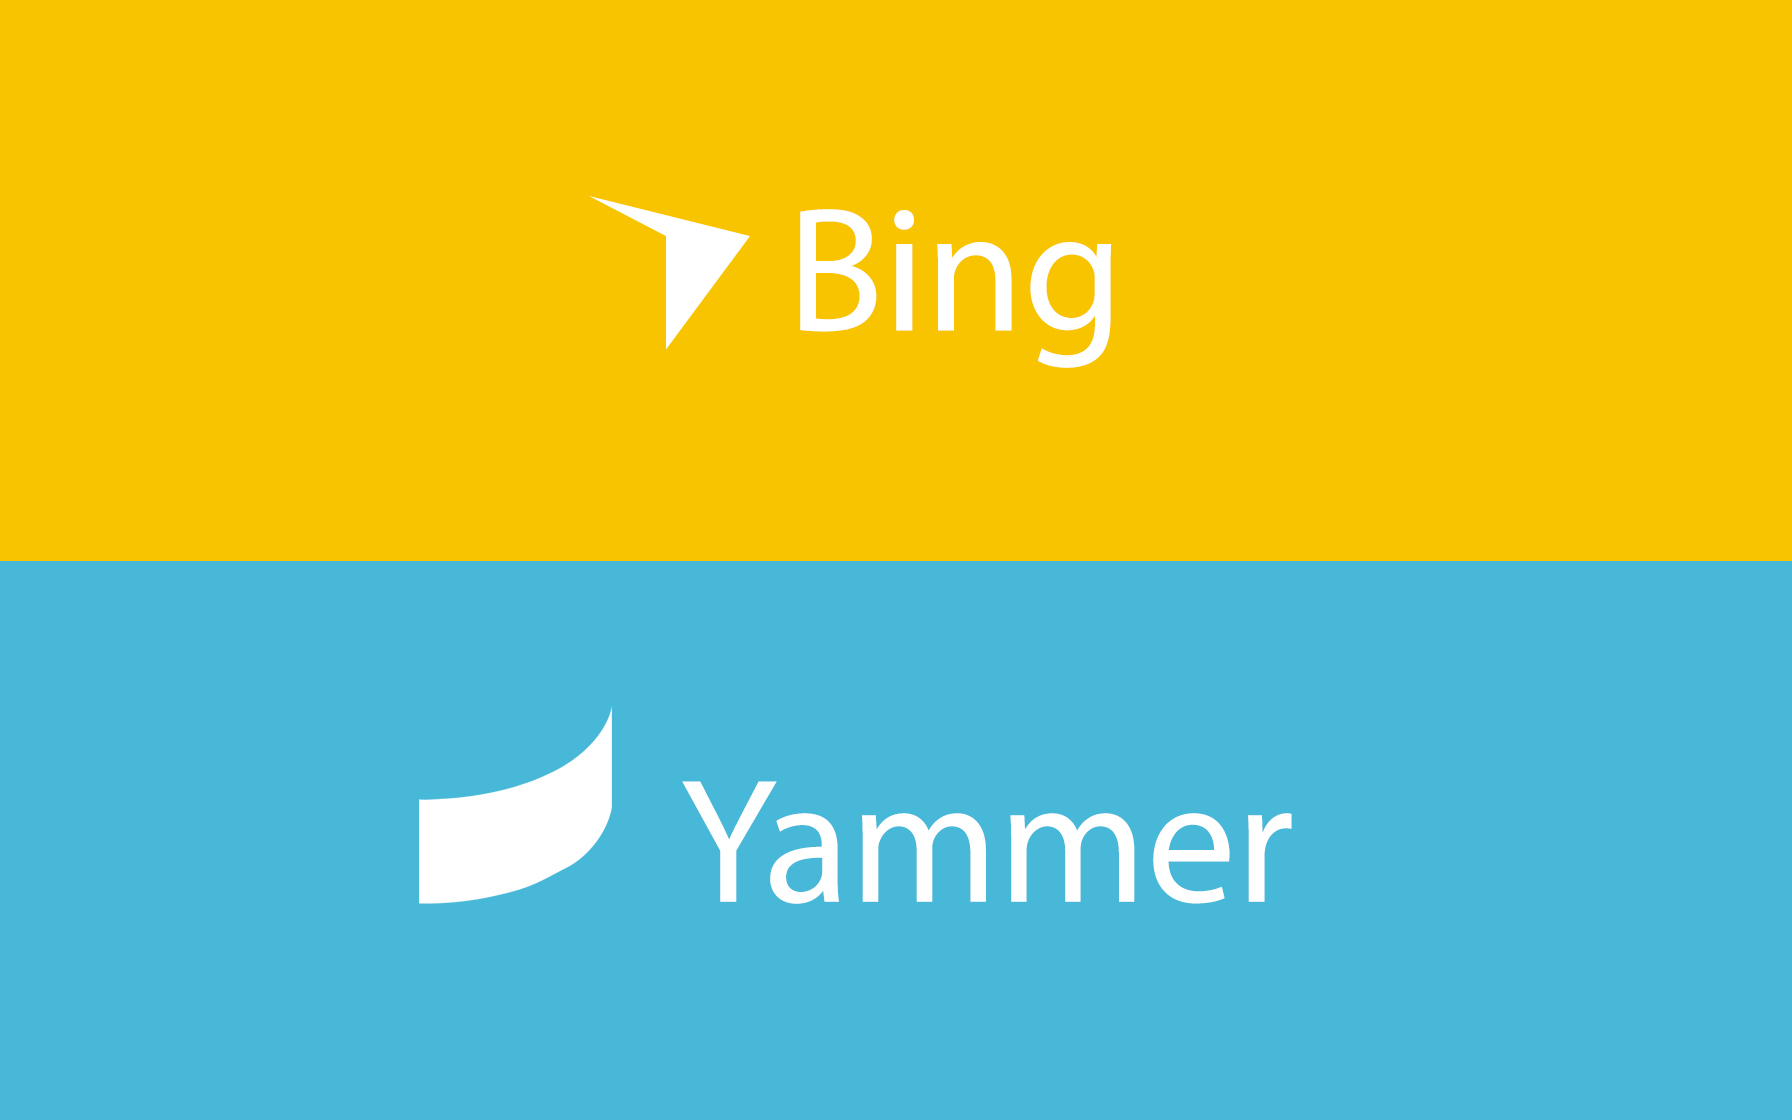 Bing imagine. Логотип бинг. Яммер. Yammer лого. Бада бинг логотип.